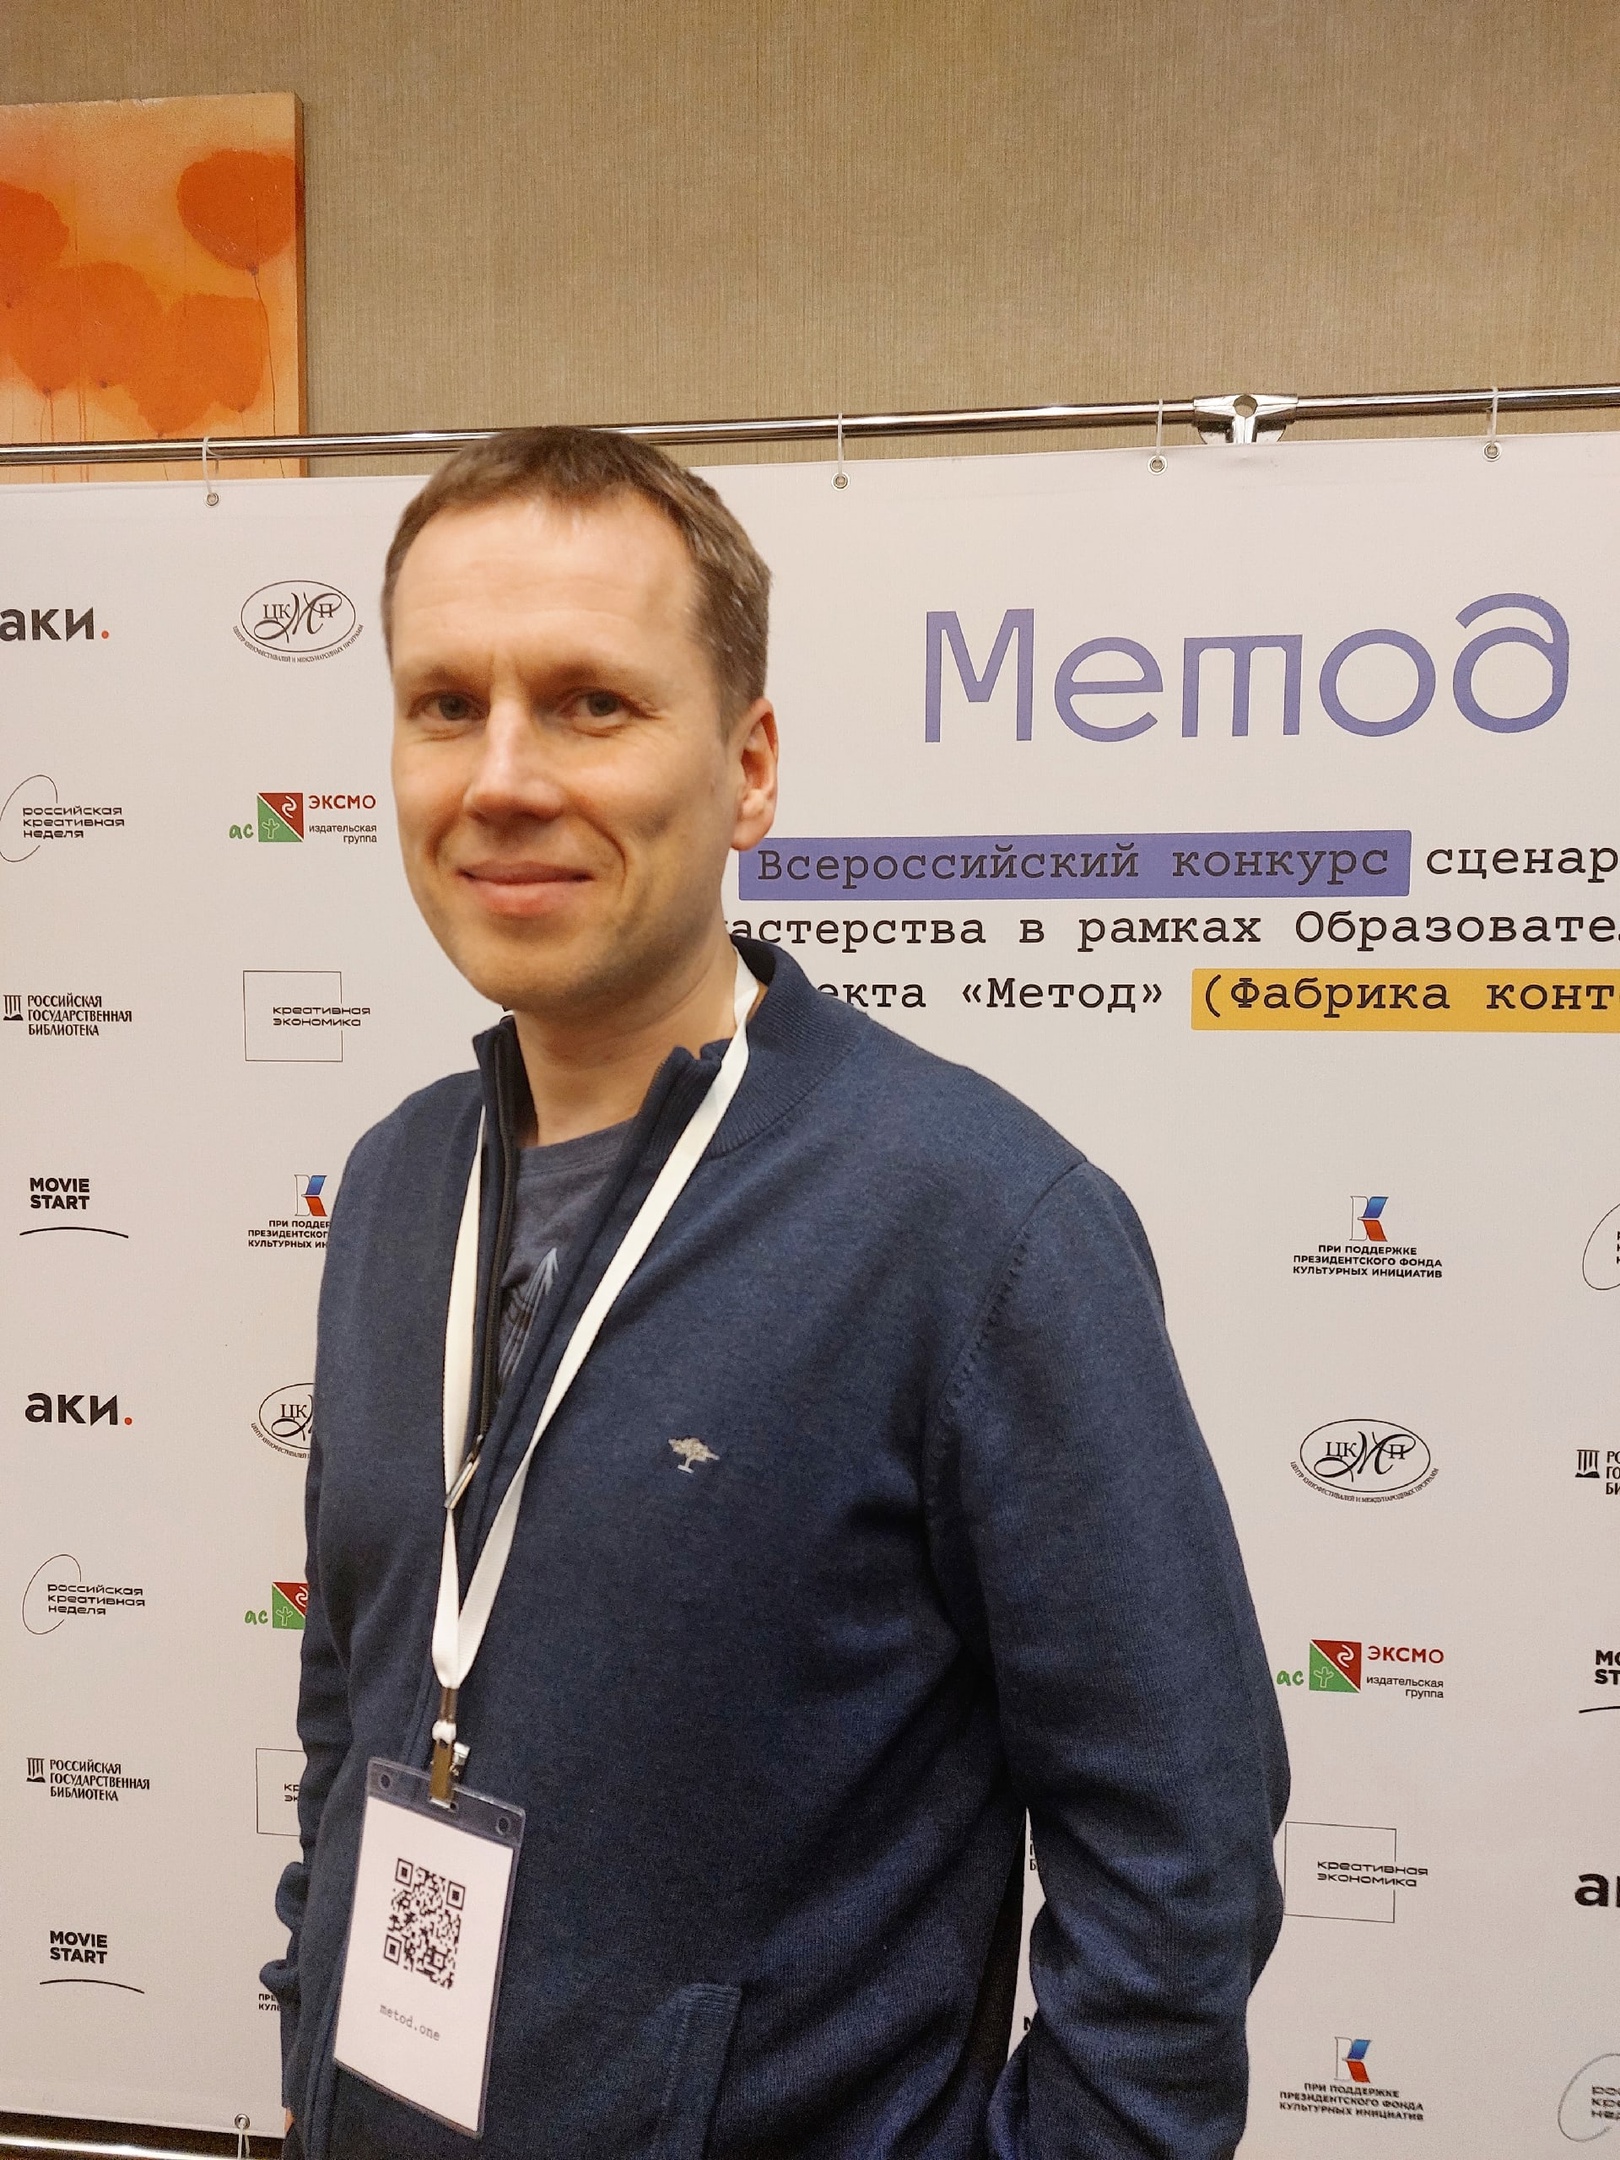 Проект режиссера из Петрозаводска попал в шорт-лист сценарного конкурса «Метод»